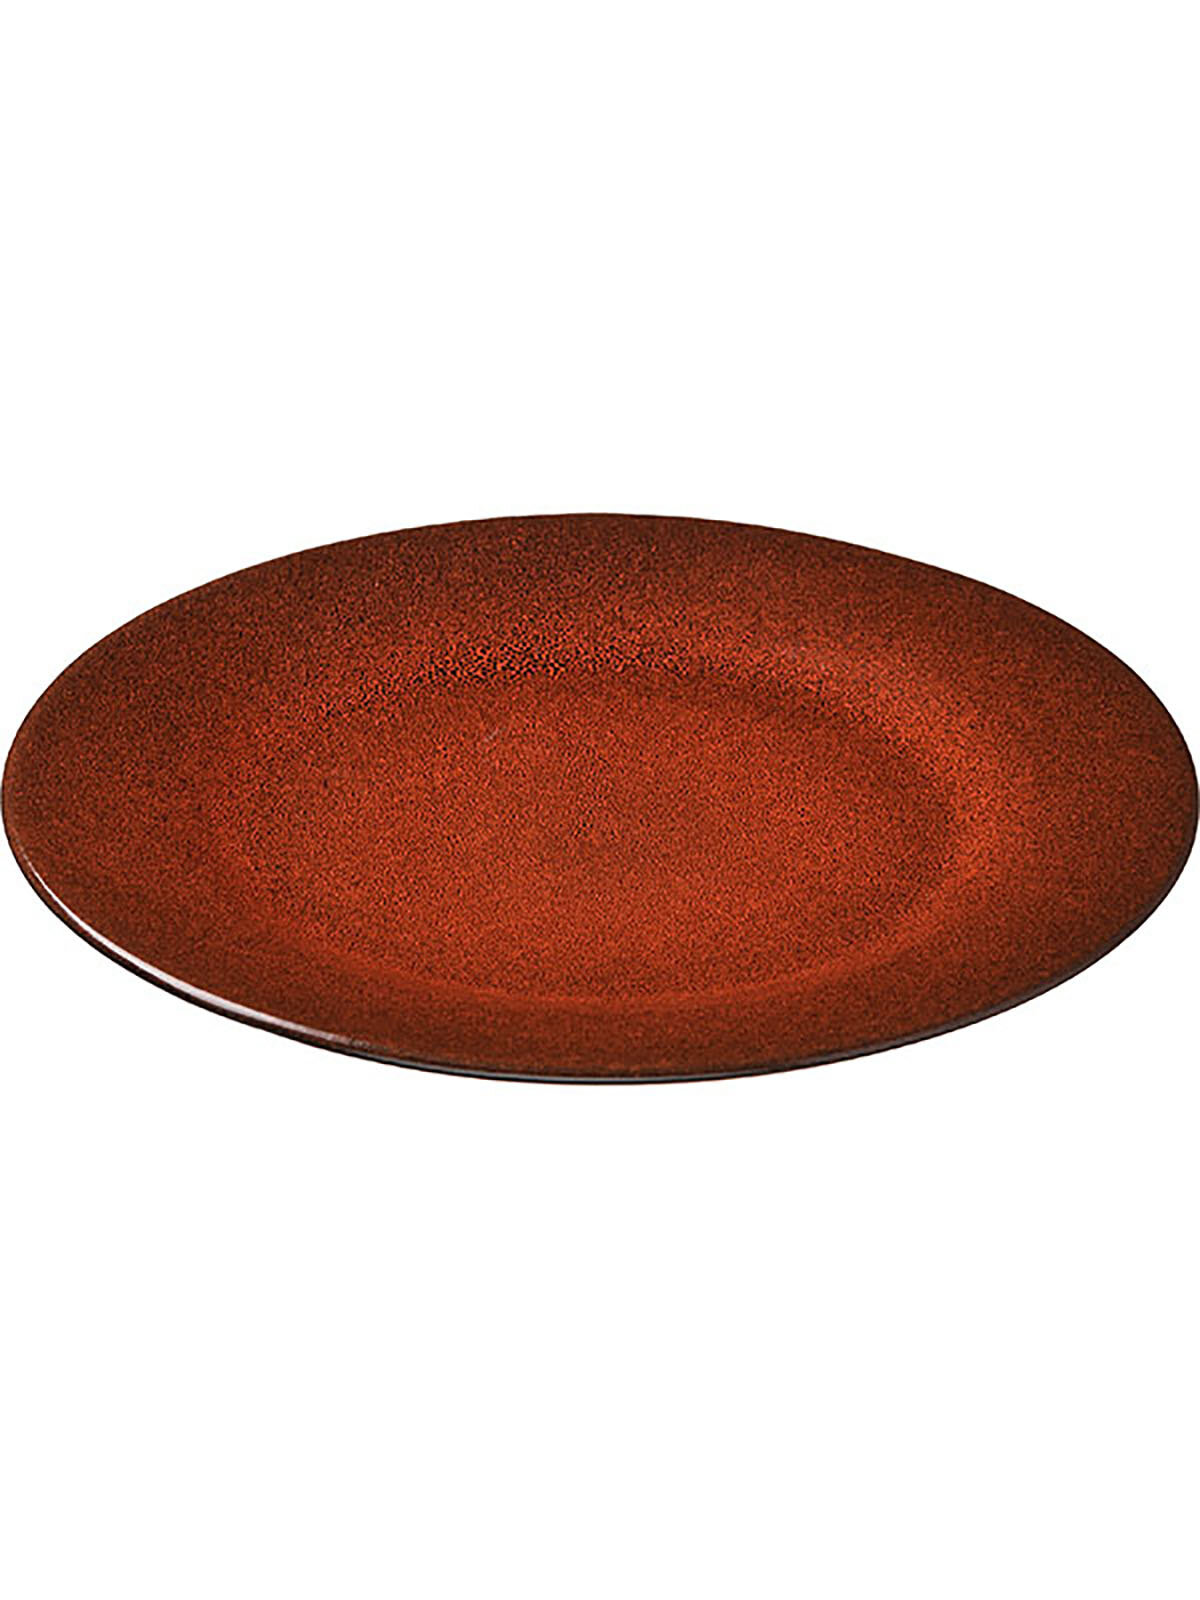 Тарелка сервировочная Борисовская Керамика Млечный путь оранжевый круглая, 24 см